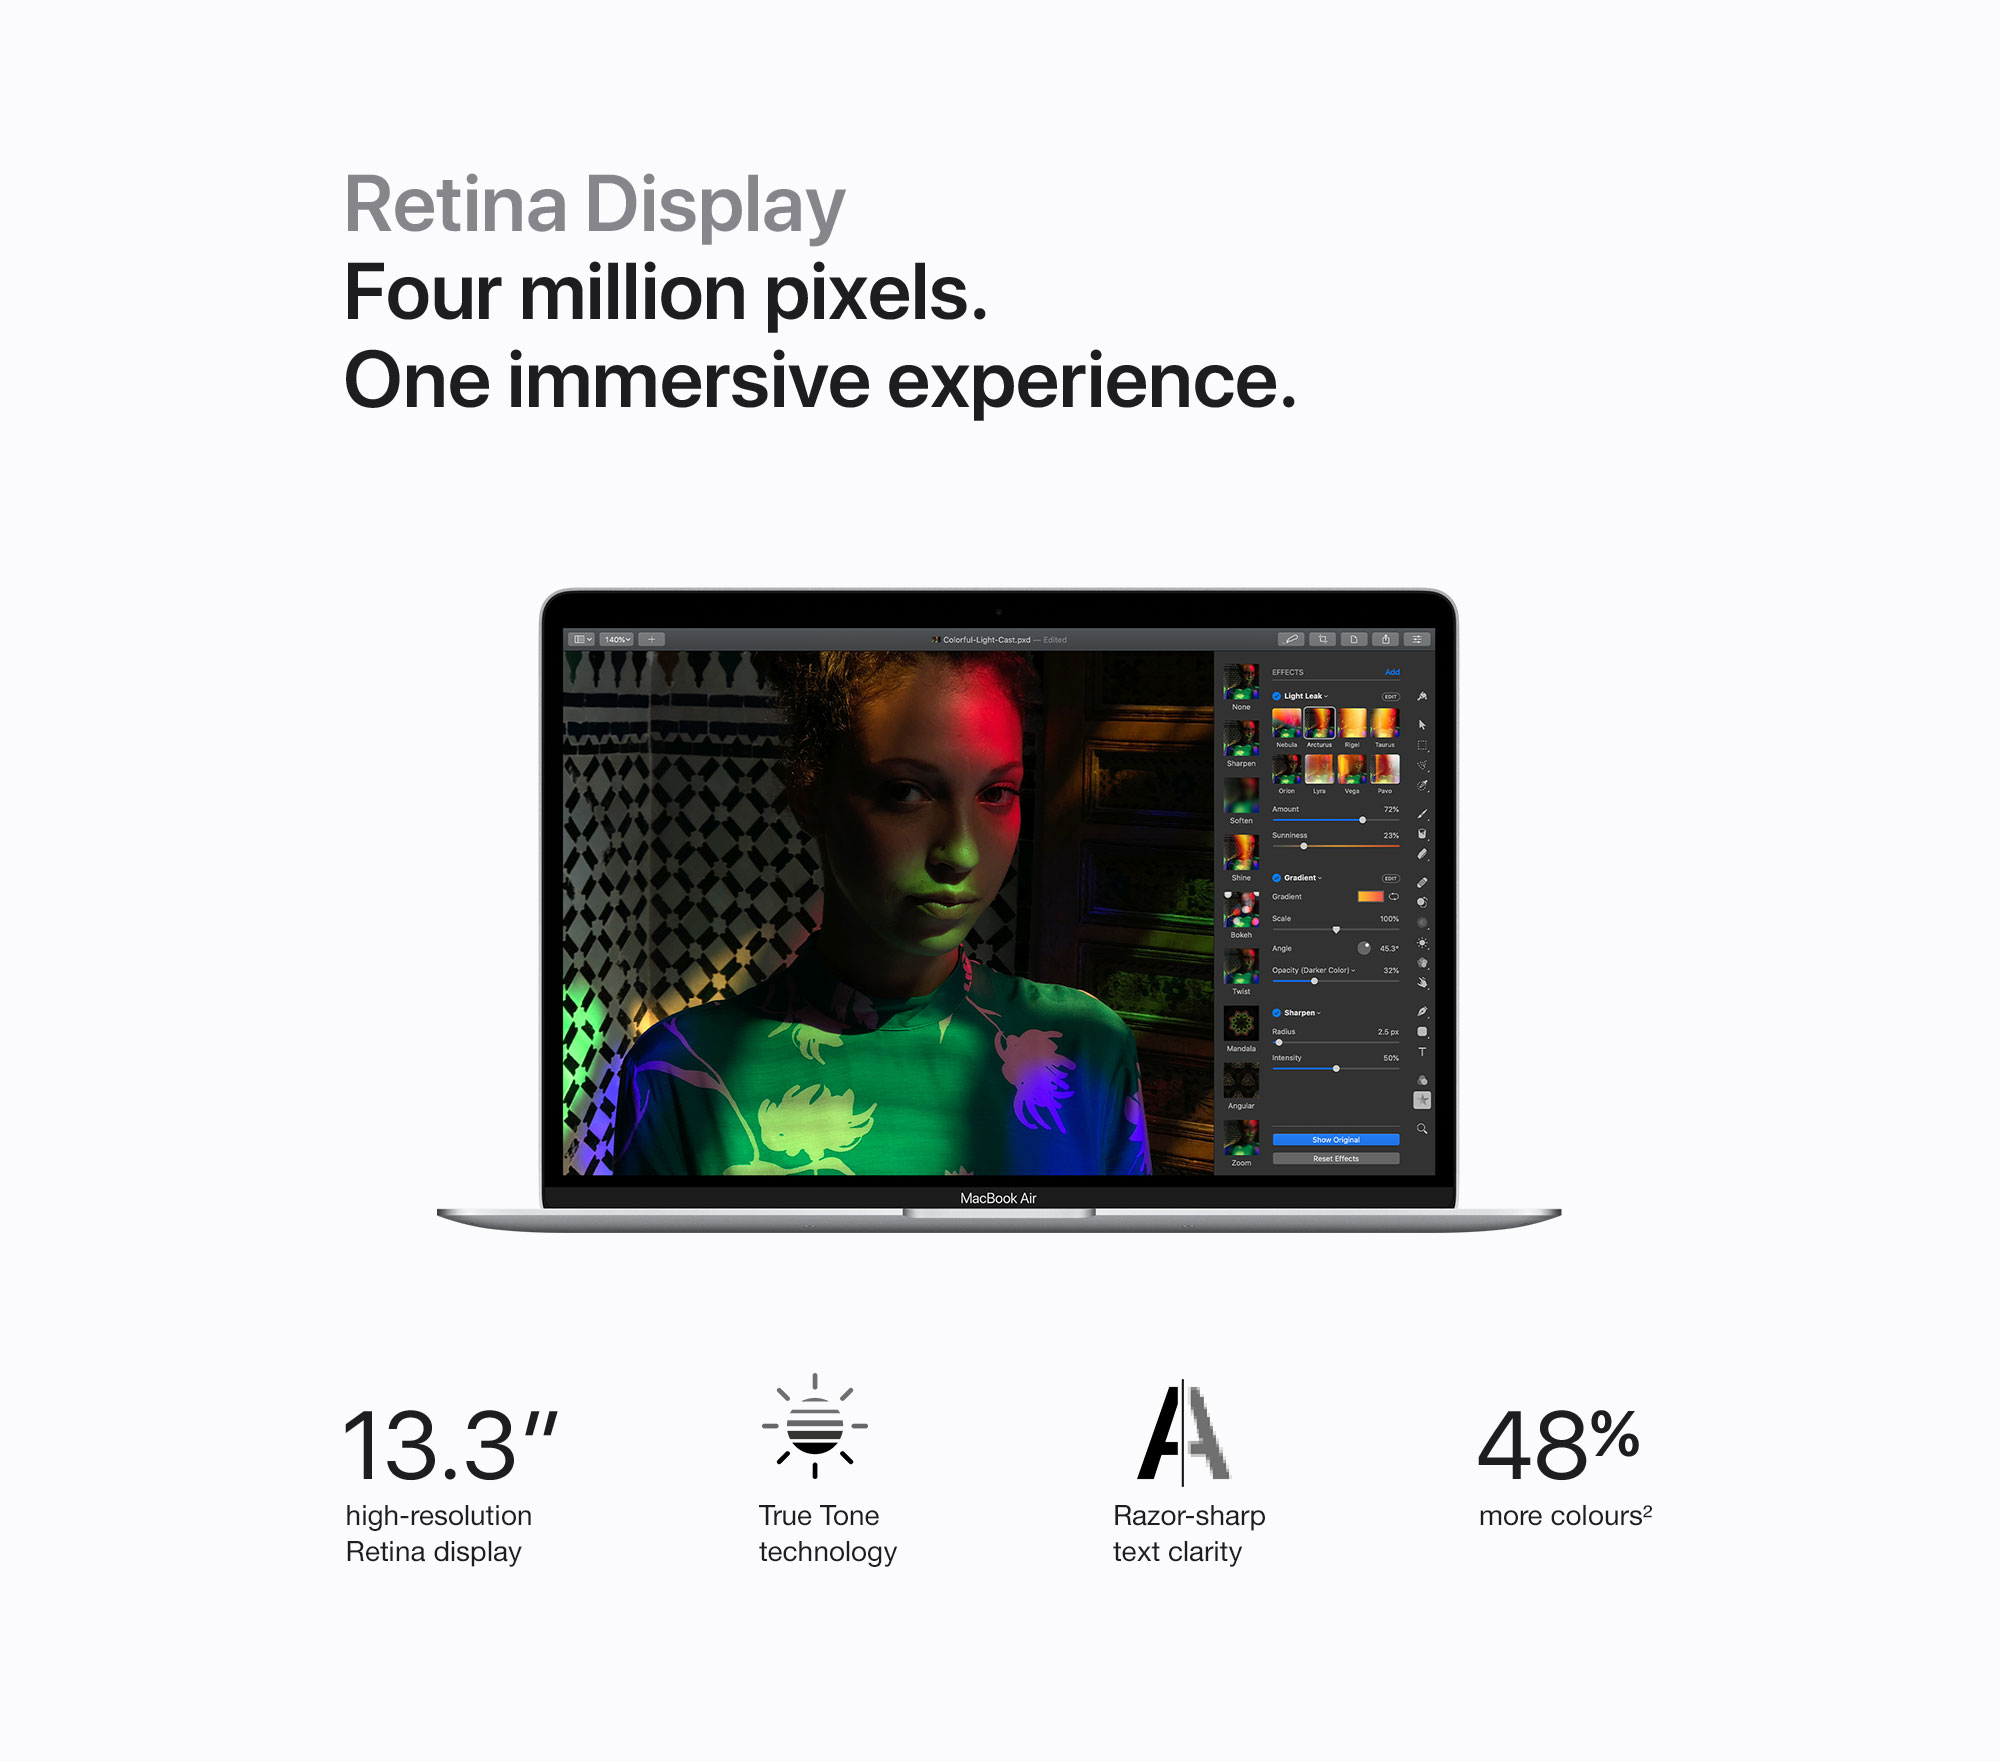 macbook_air_retina_2020